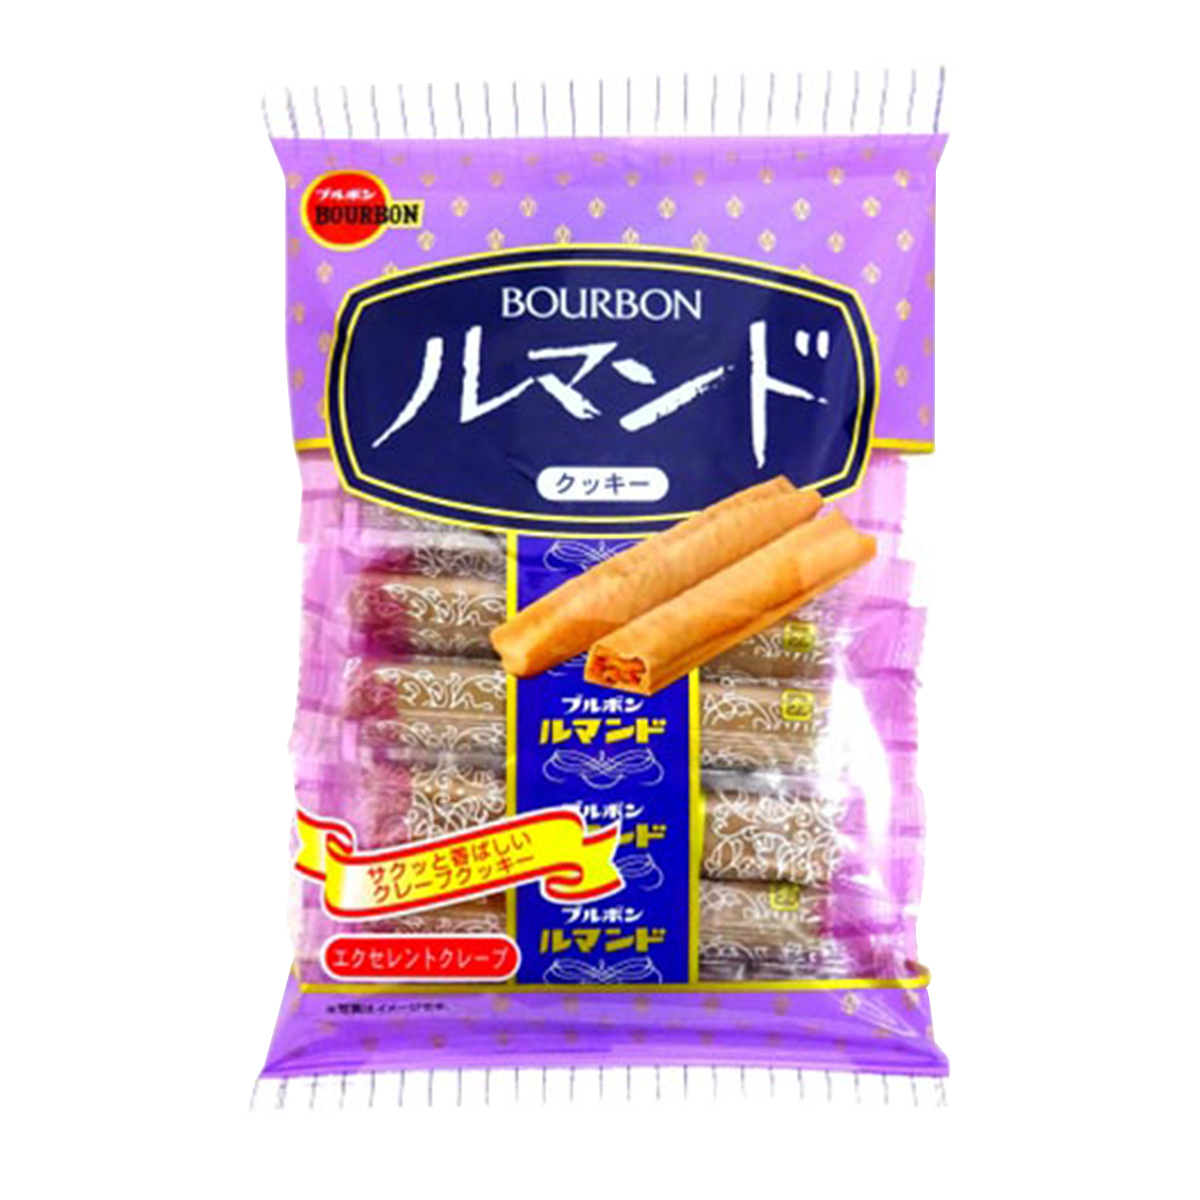 Biscoito Japones Lumonde em Camada com Cobertura de Chocolate Bourbon - 88,8 gramas